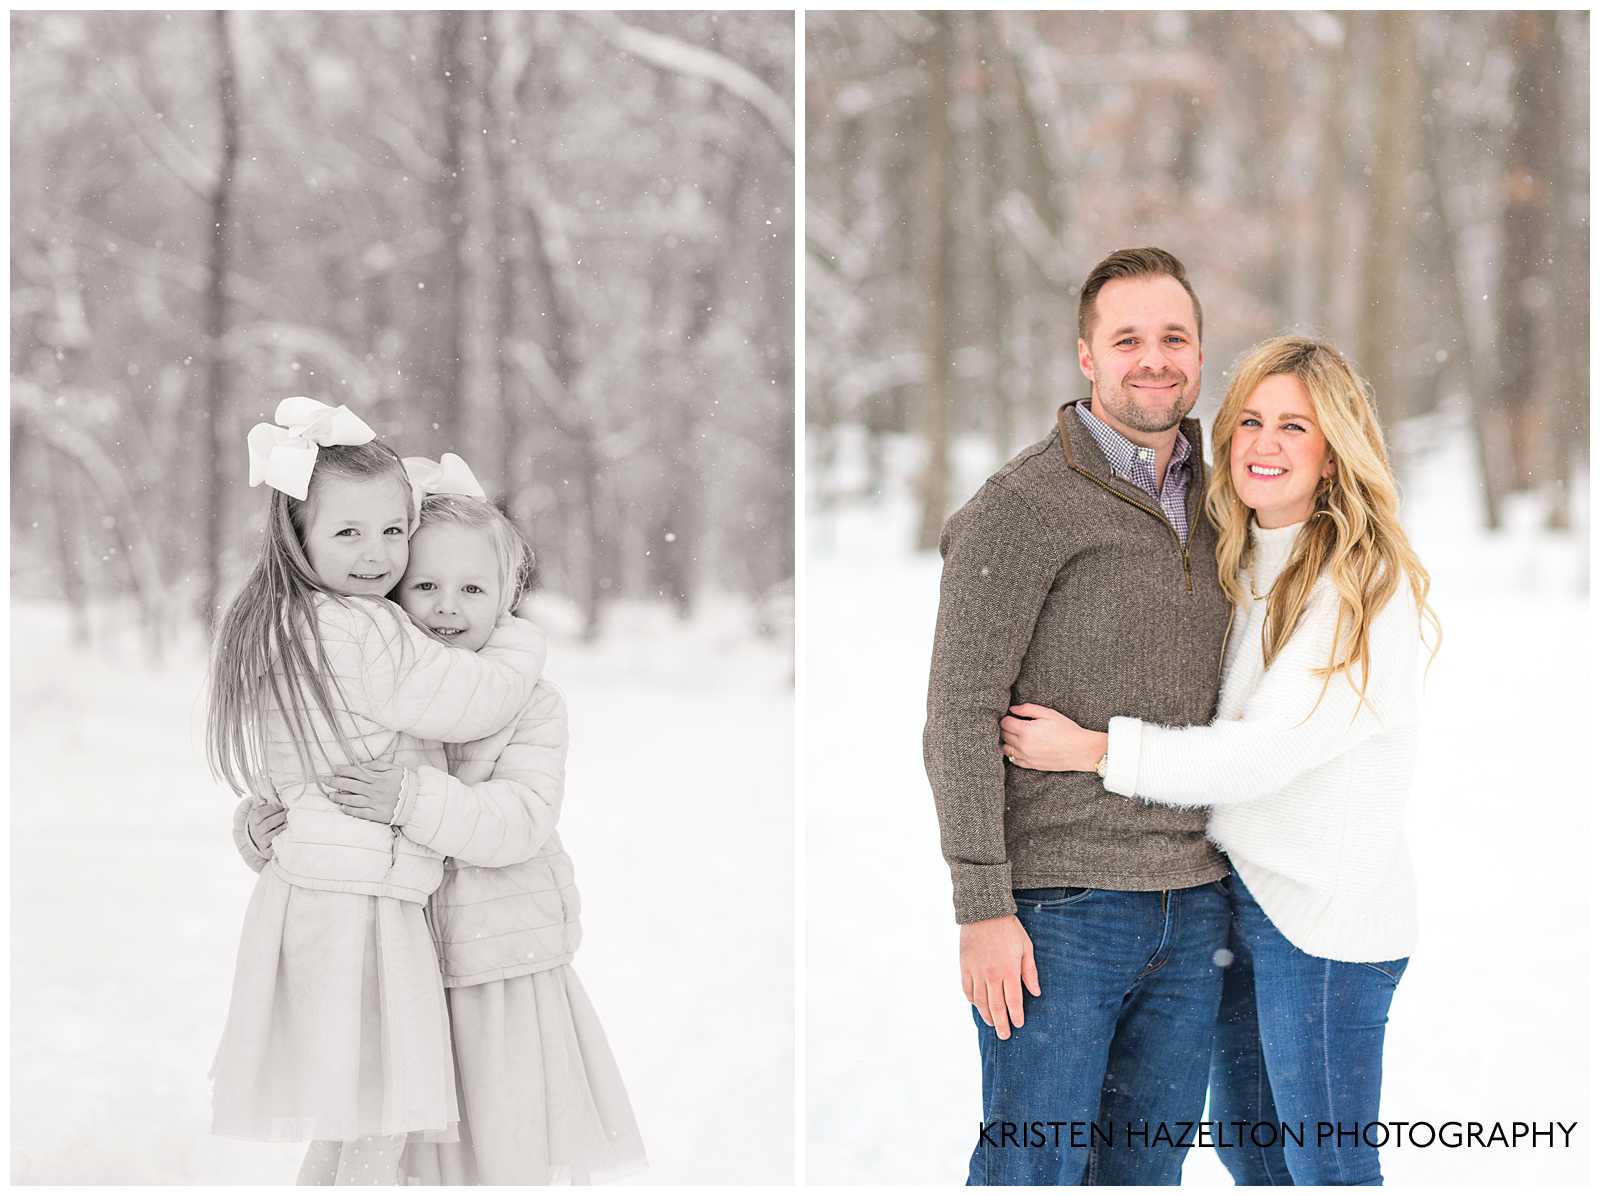 Family hugging at a Snowfall photoshoot